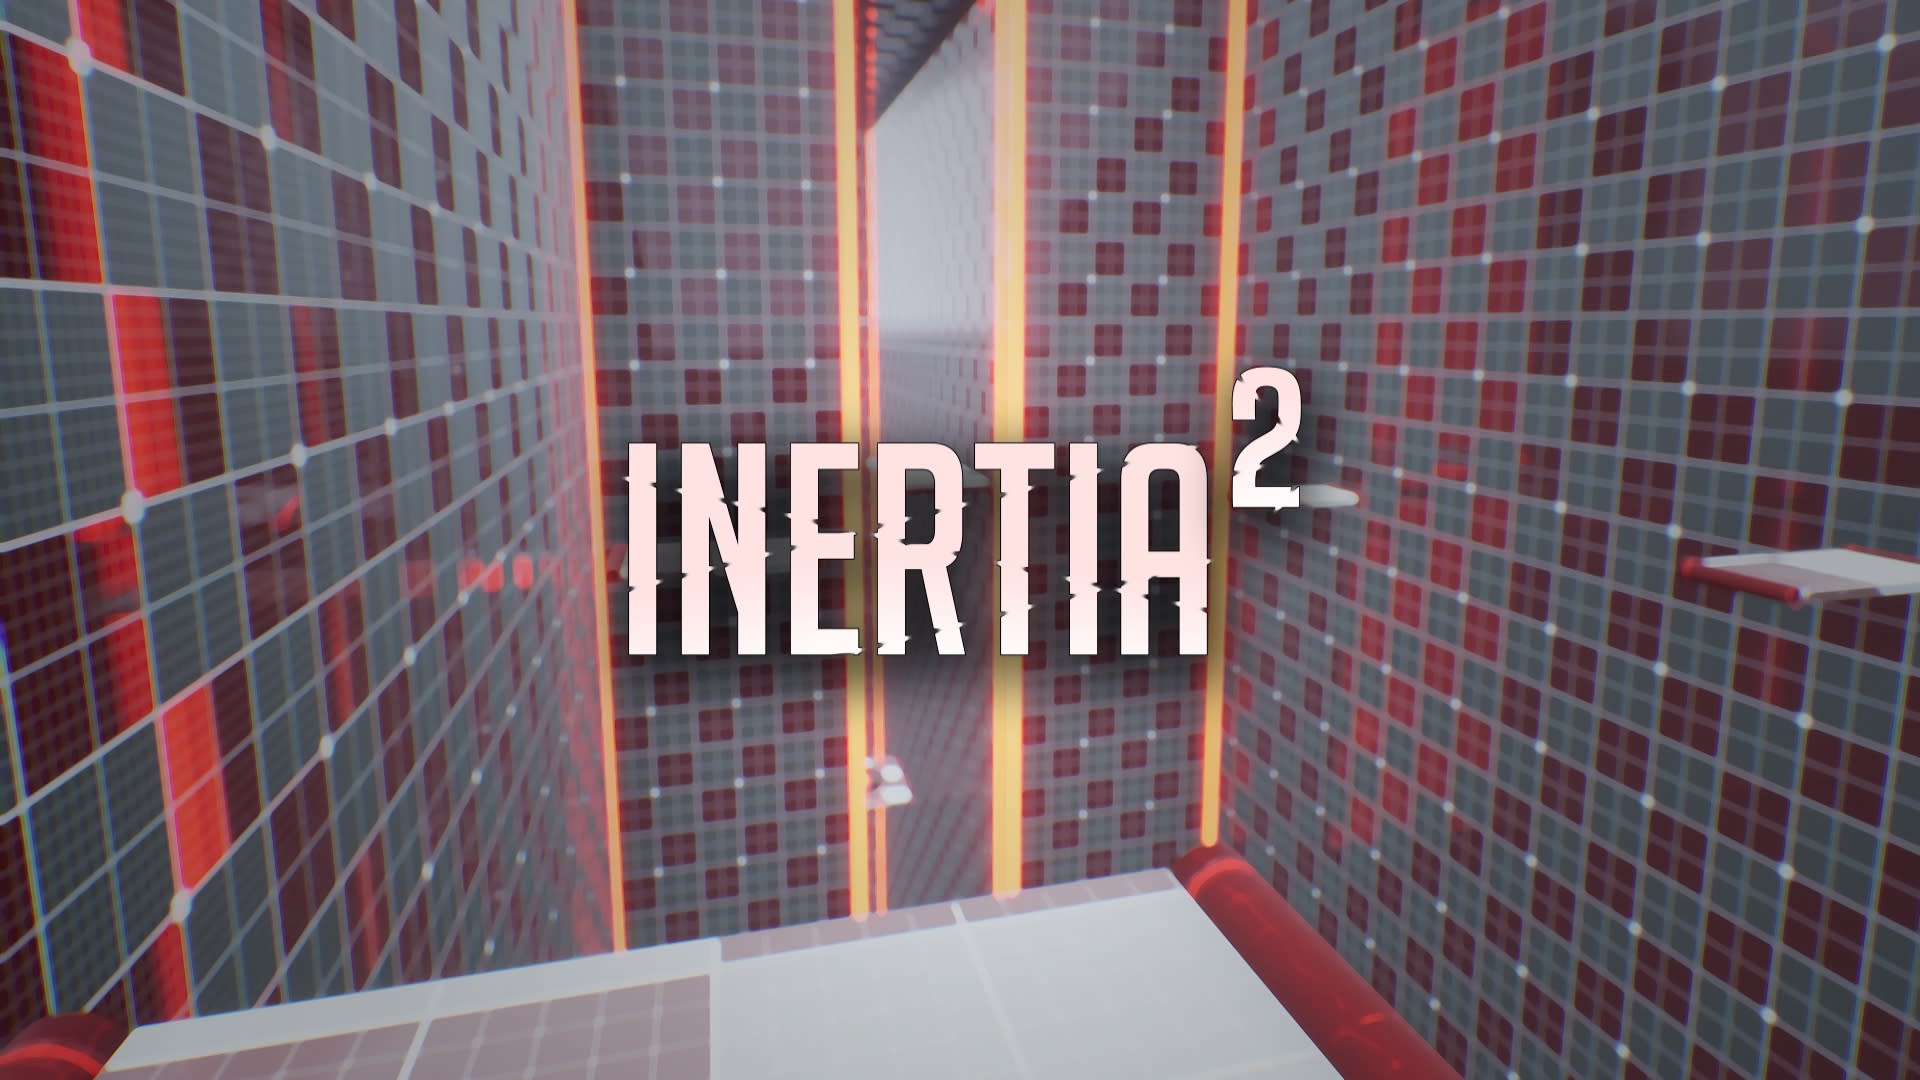 Inertia 2